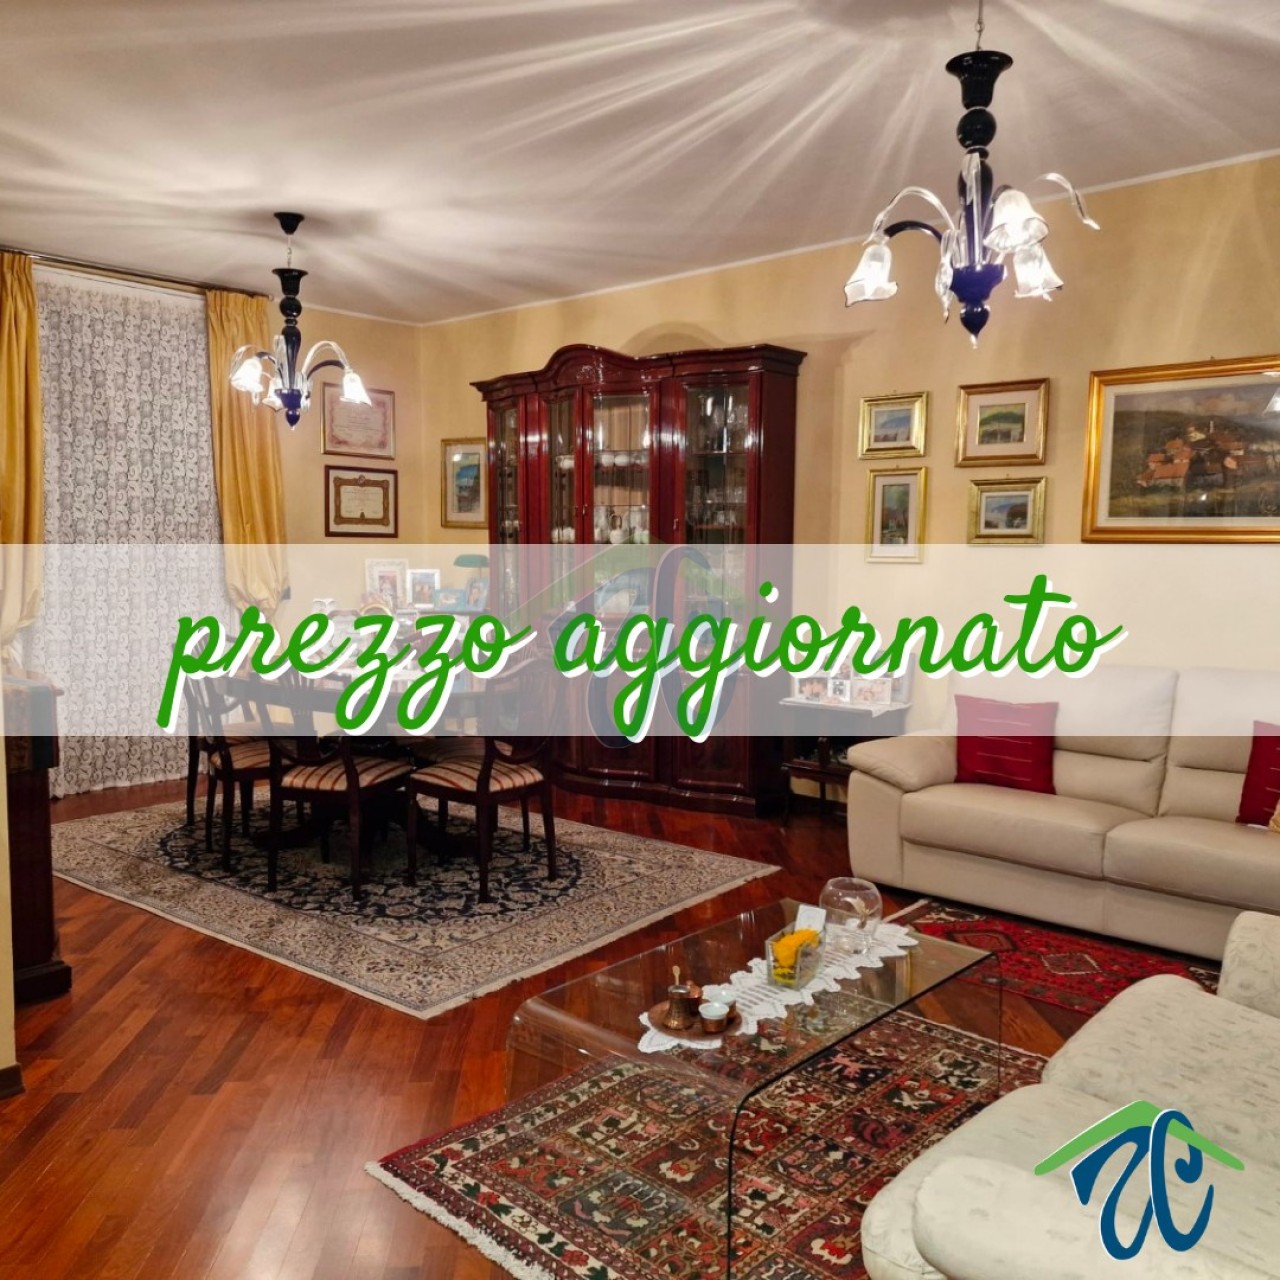 Villa Bifamiliare in vendita a Rottofreno, 5 locali, prezzo € 369.000 | PortaleAgenzieImmobiliari.it